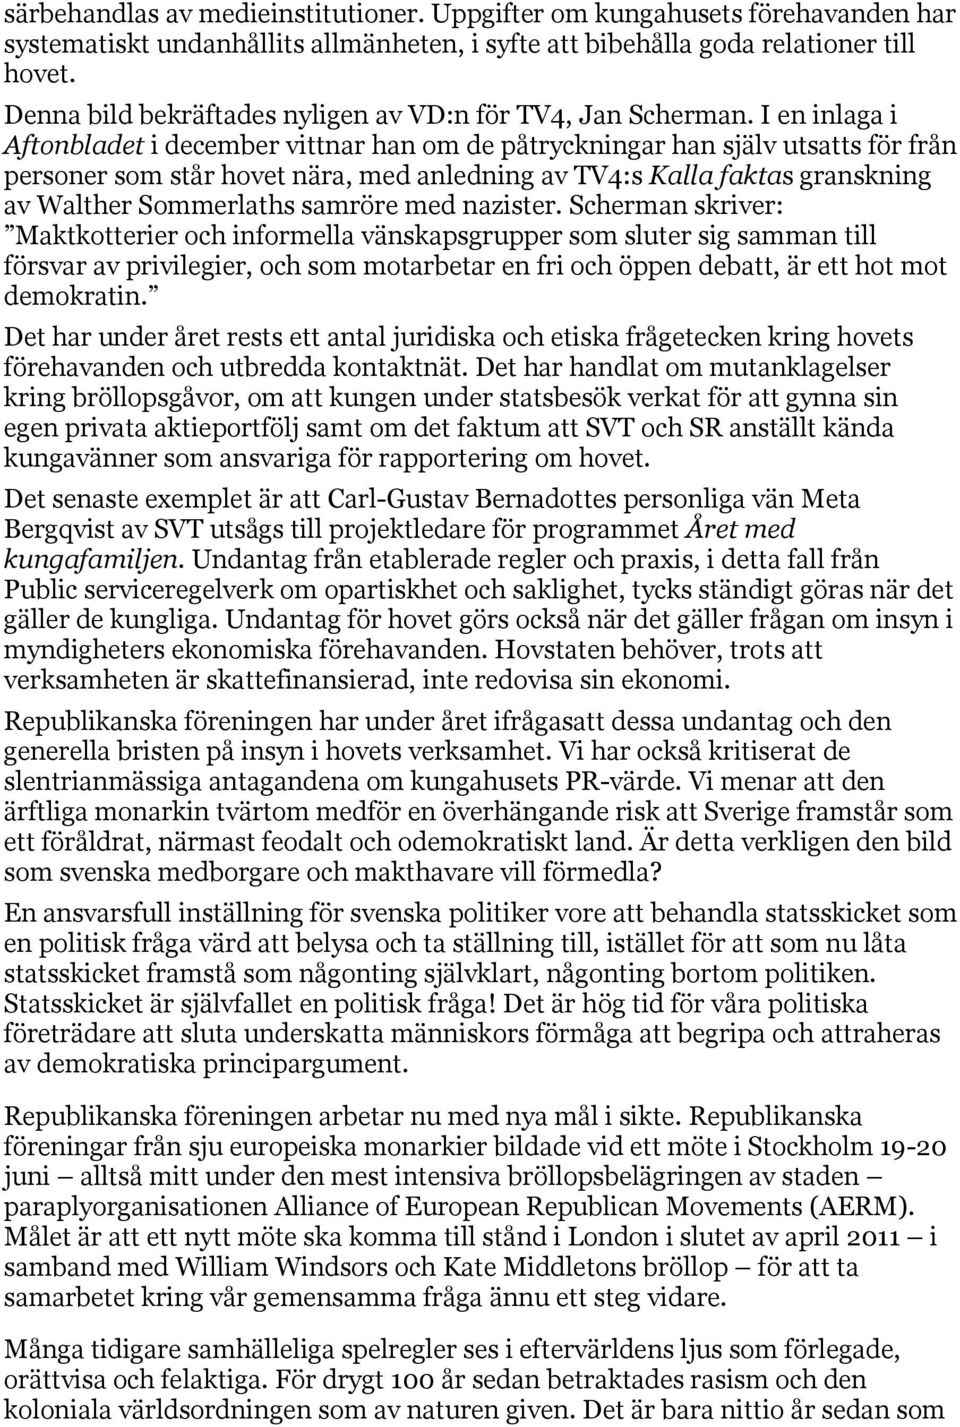 I en inlaga i Aftonbladet i december vittnar han om de påtryckningar han själv utsatts för från personer som står hovet nära, med anledning av TV4:s Kalla faktas granskning av Walther Sommerlaths